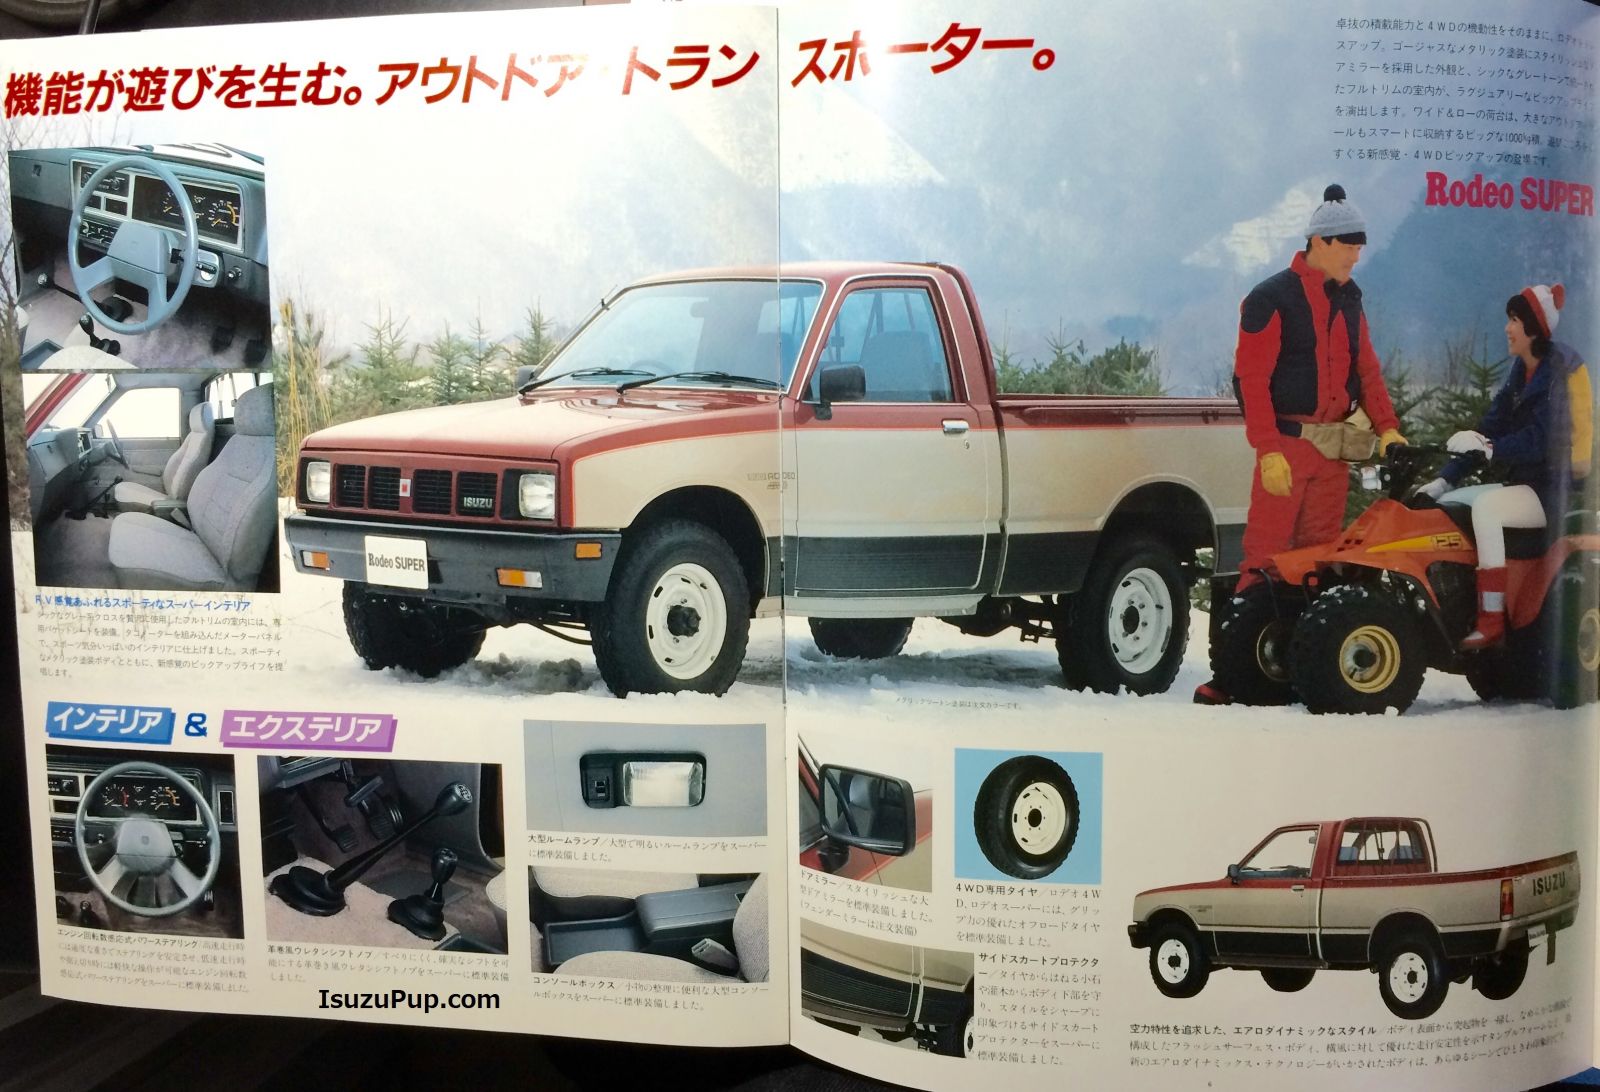 1985 Isuzu Faster, Rodeo 4WD, Rodeo Super 005.jpg